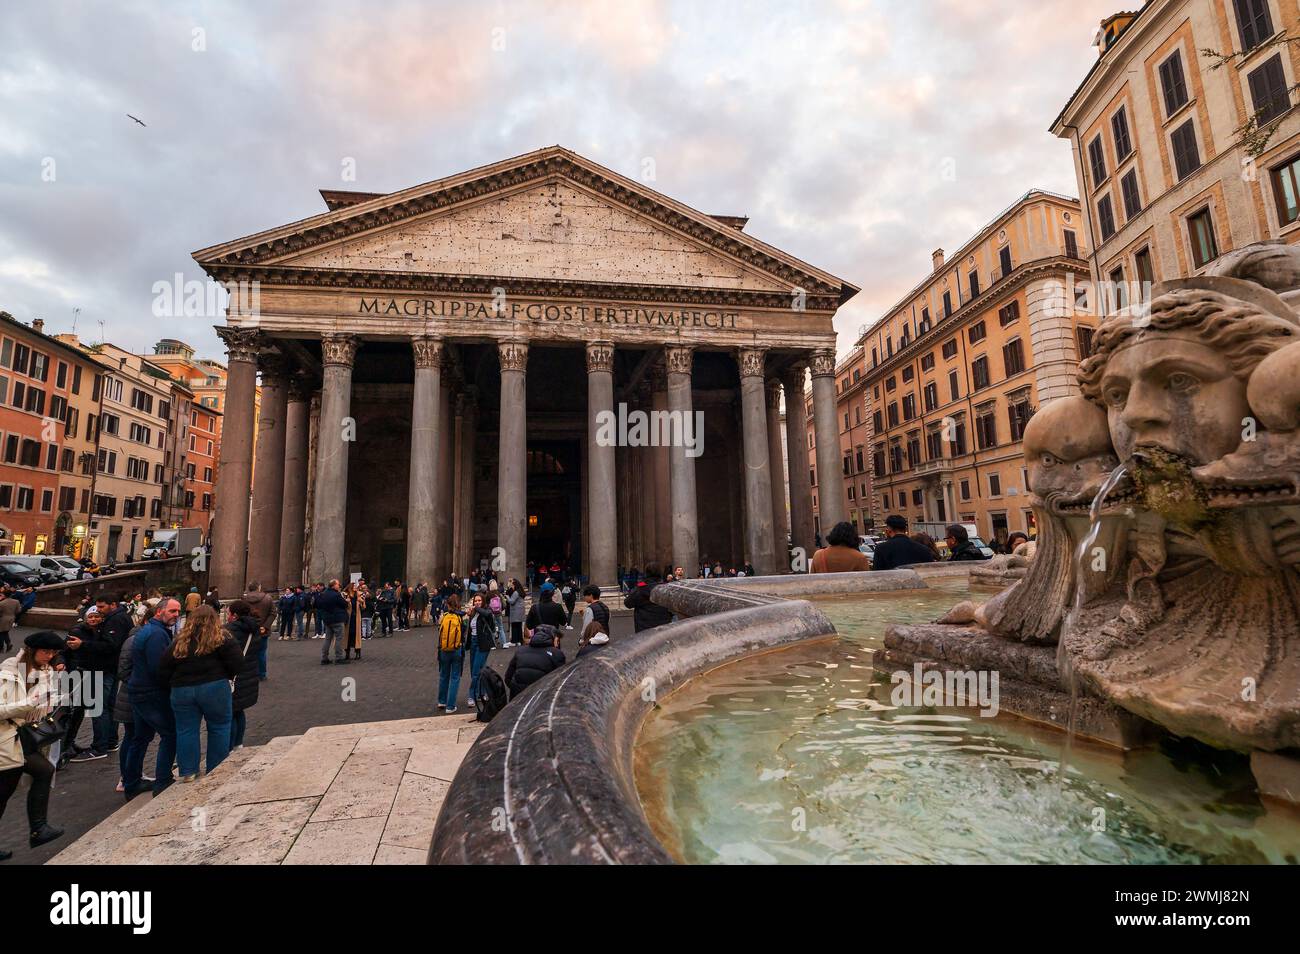 Roma, Italia - 22 dicembre 2022: L'immagine mostra una vivace scena di turisti di fronte al Pantheon, con la sua iconica facciata e le iscrizioni, viste Foto Stock